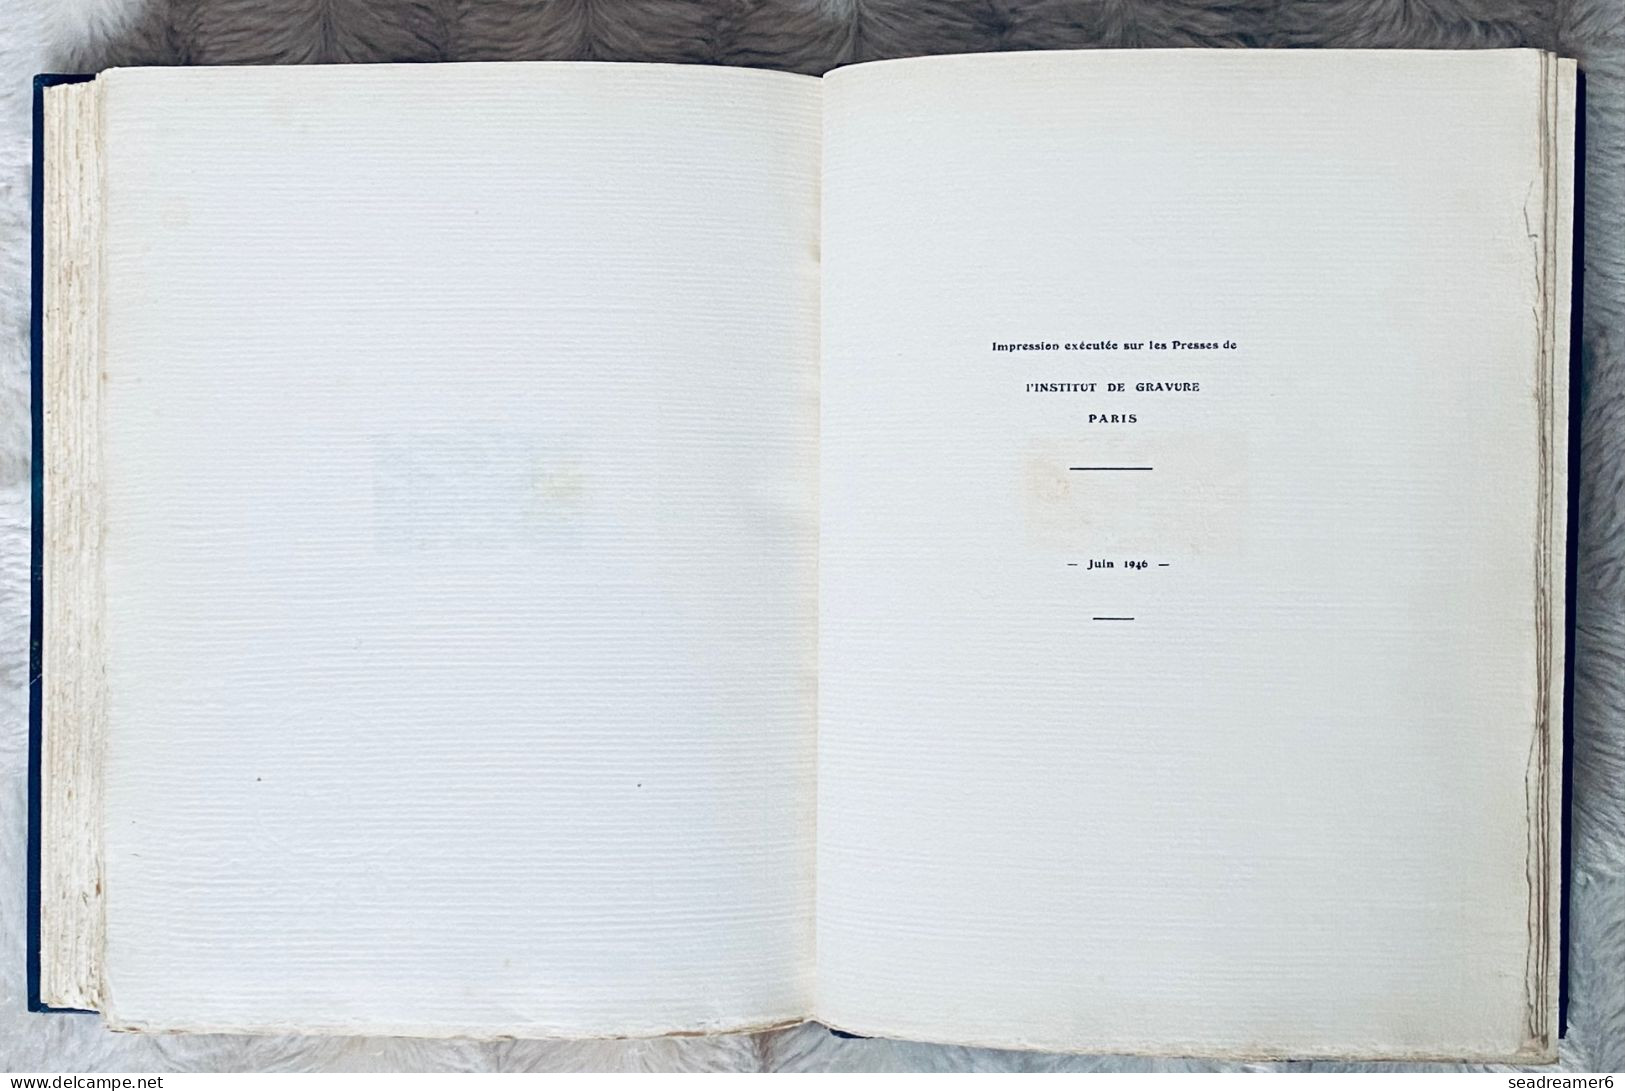 TCHAD AU RHIN & VICTOIRE 1946 Livre cuir relié numéroté : n°26 (tirage 30) de 105 epreuves en bleu de la serie RARETÉ !